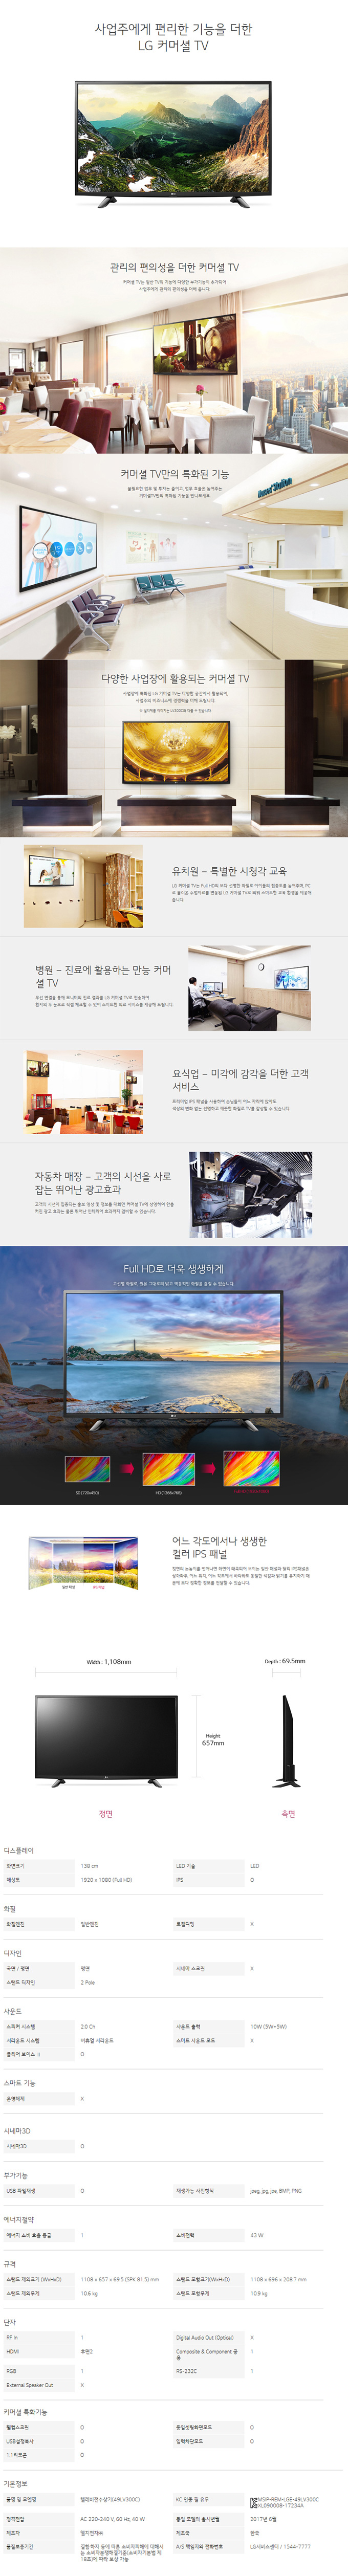 용산케이블 - LG 49인치 LED TV (49LV300C) 상세보기